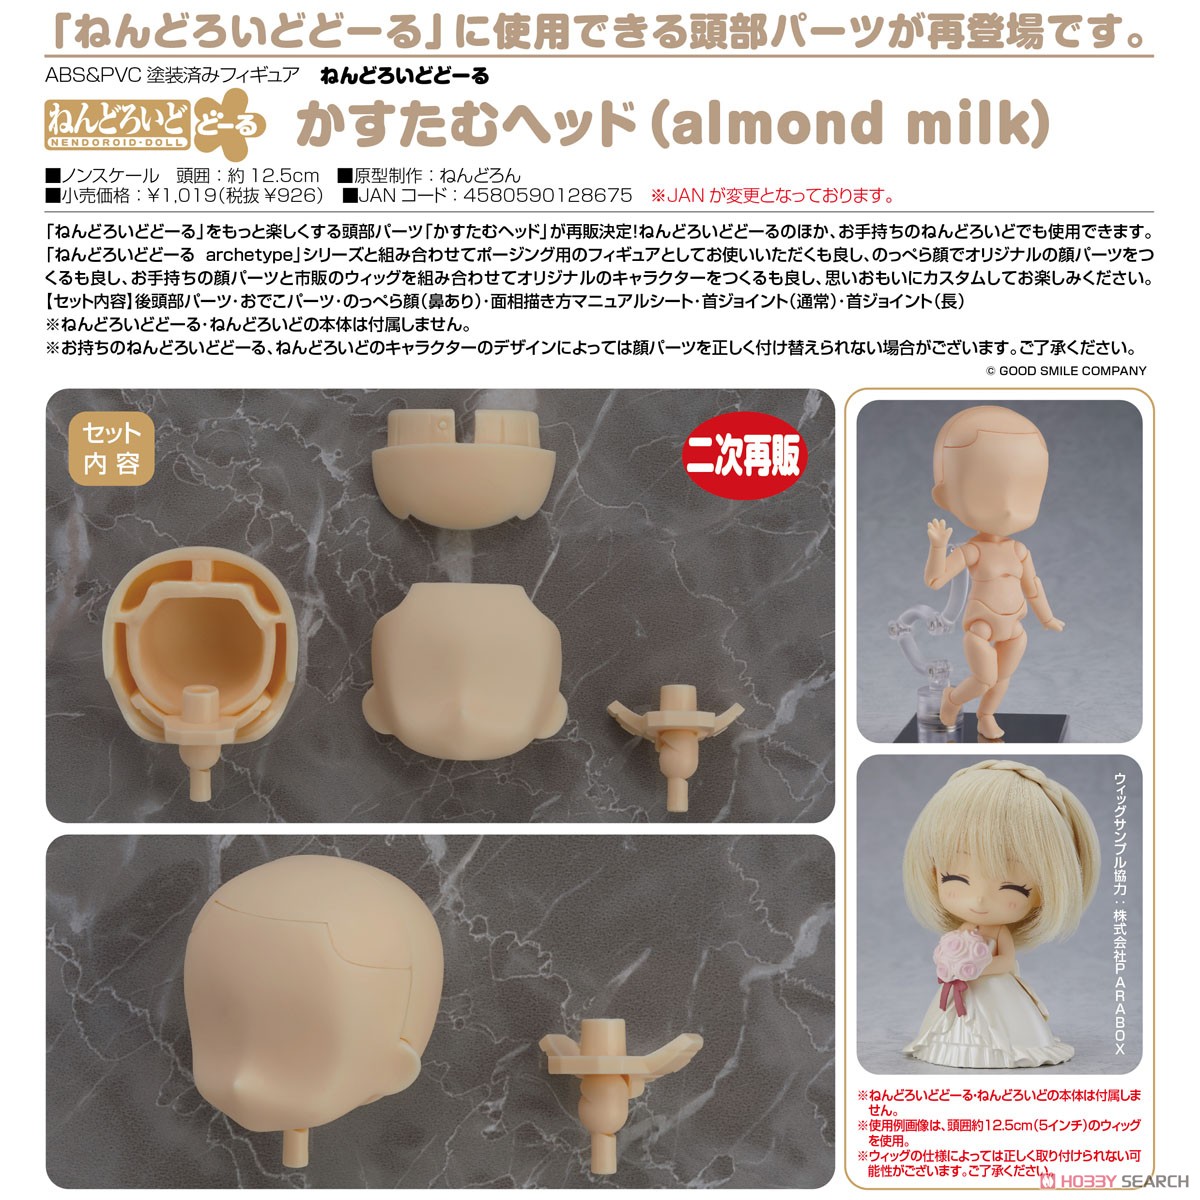 ねんどろいどどーる かすたむヘッド (almond milk) (フィギュア) 商品画像3